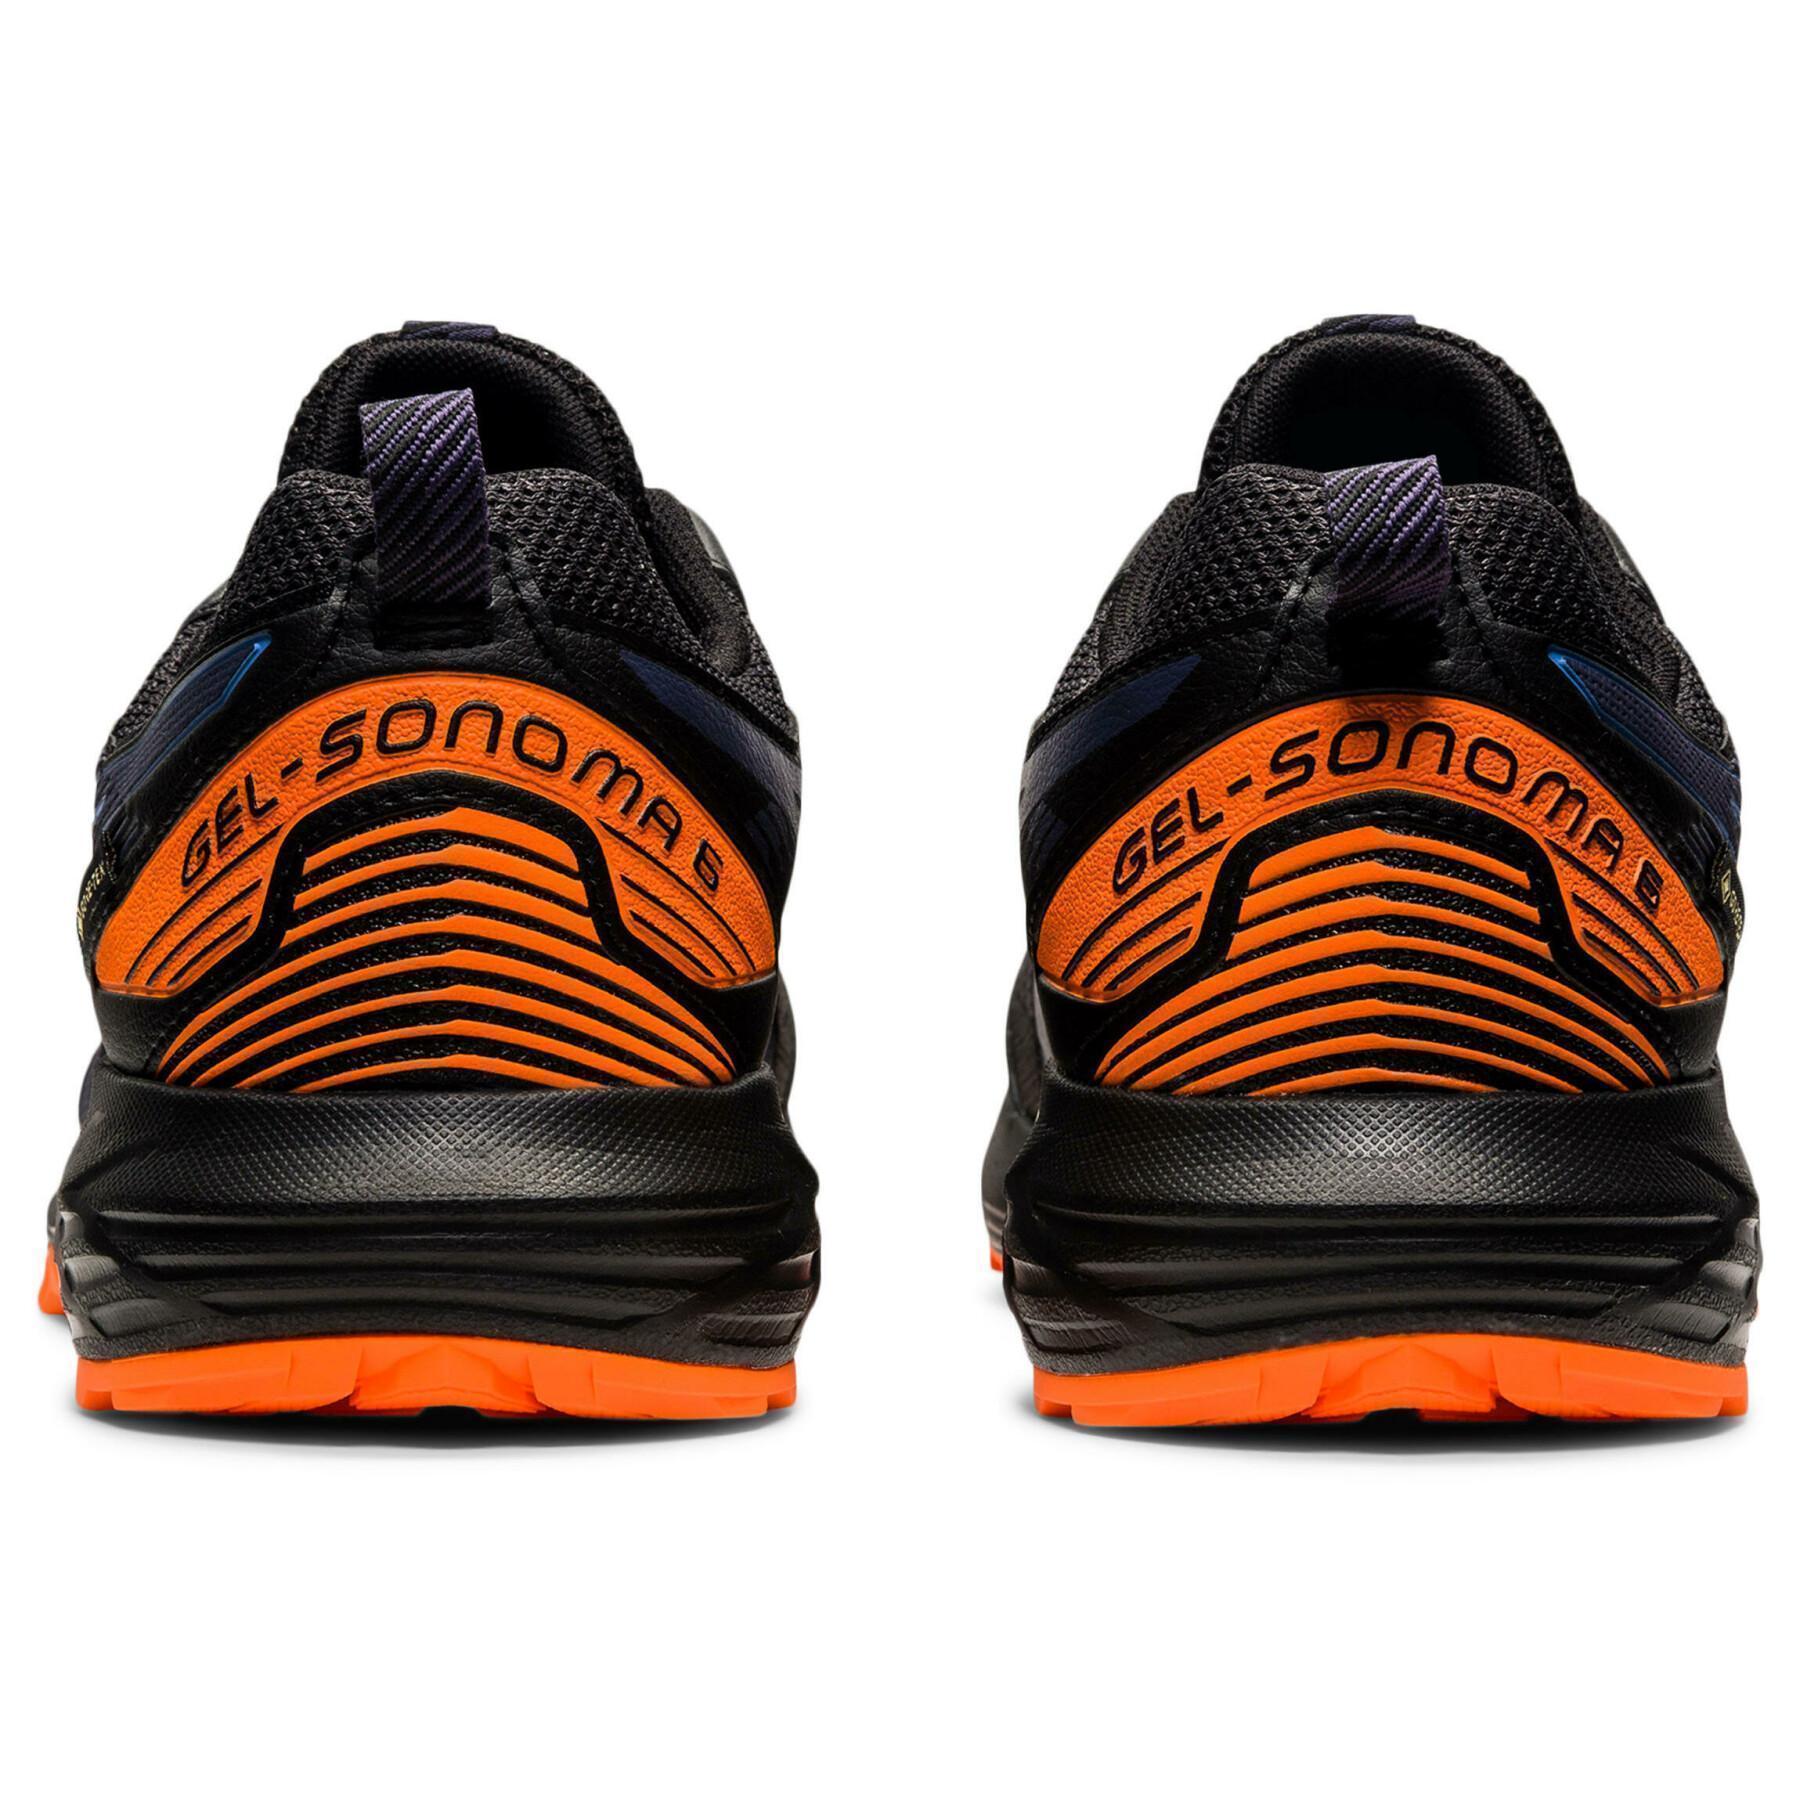 Schuhe Asics Gel-Sonoma 6 G-Tx